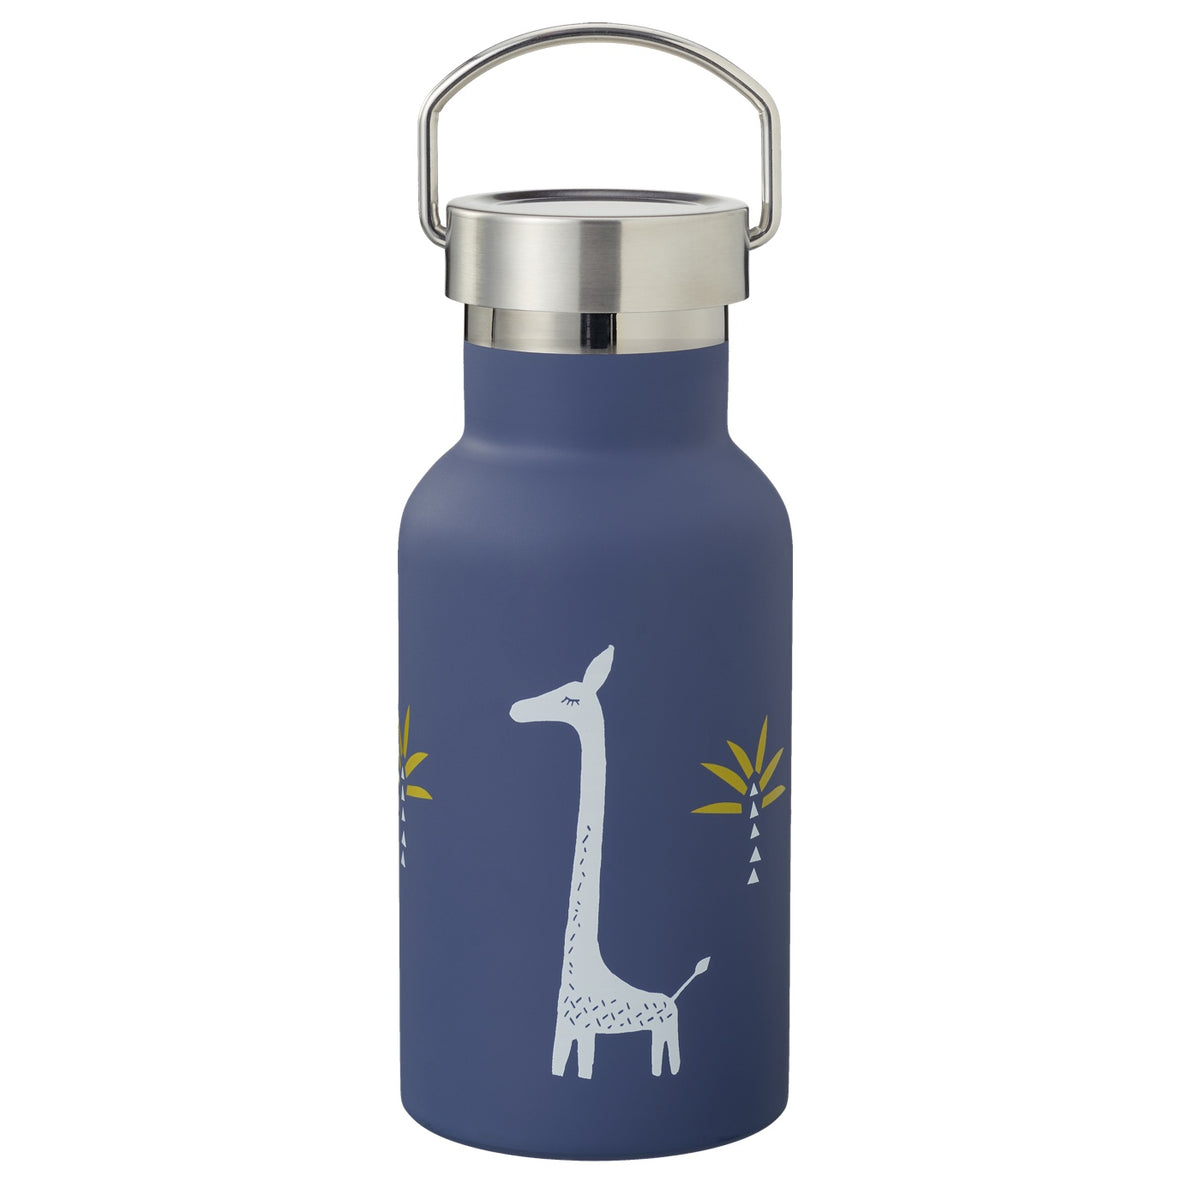 Die Thermosflaschen von Fresk sind aus doppelwandigem Edelstahl und eignen sich perfekt für heiße und kalte Getränke. 350ml, Modell Giraffe, blau